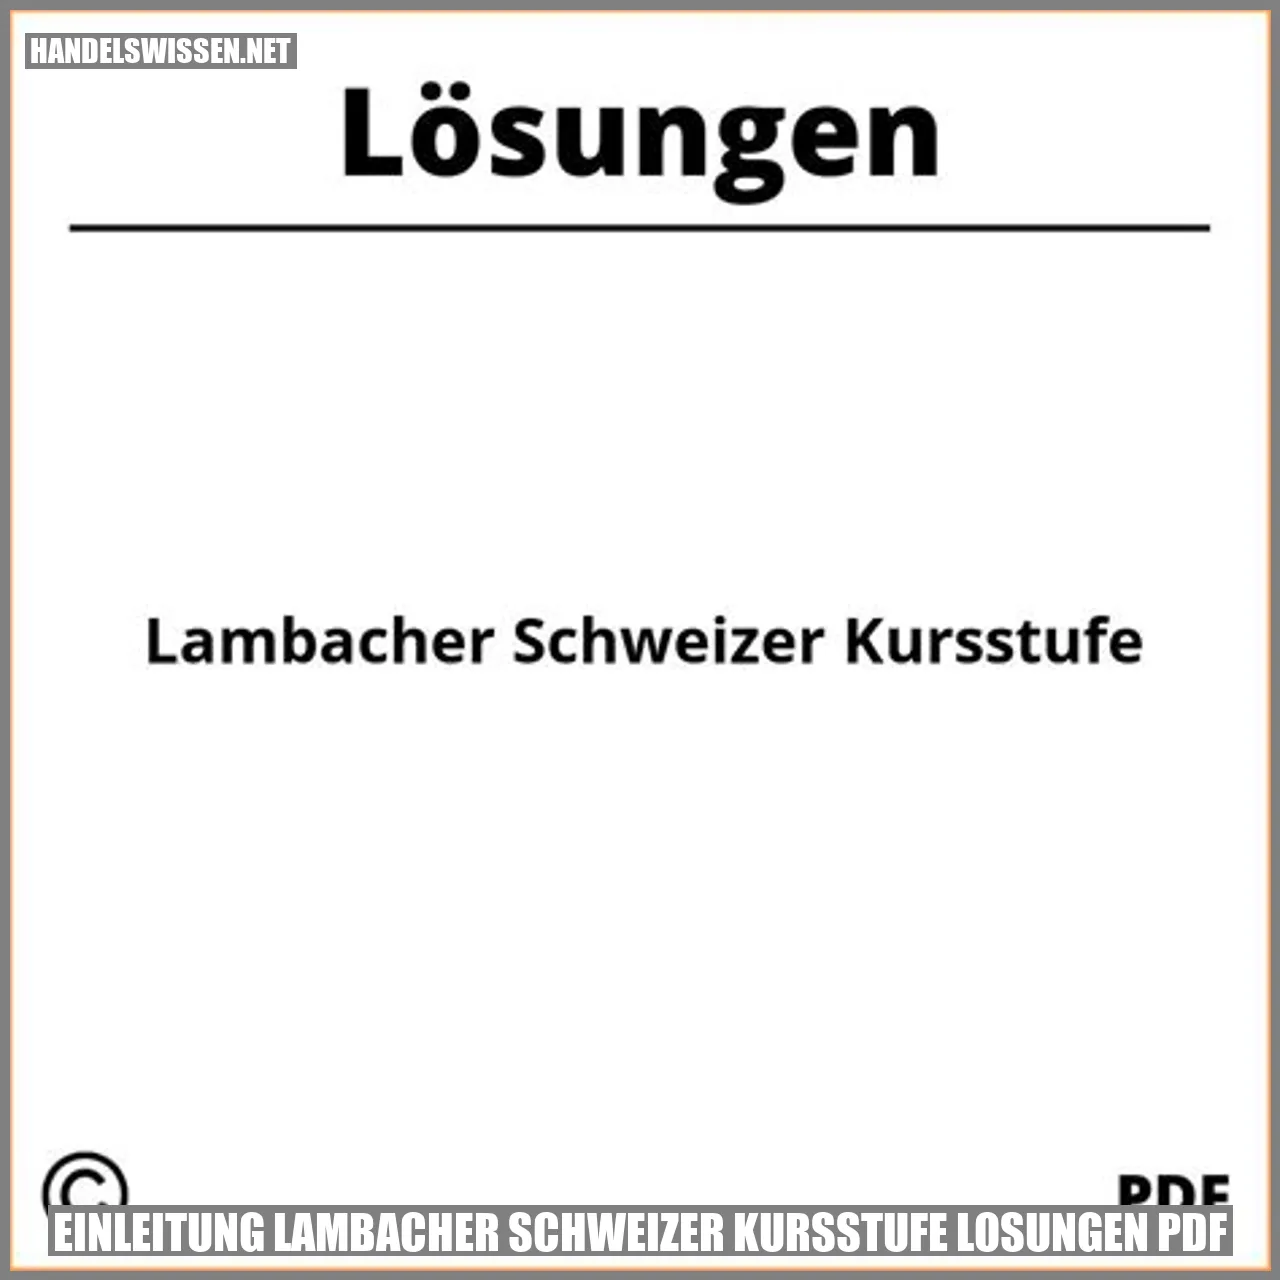 Einleitung Lambacher Schweizer Kursstufe Lösungen PDF